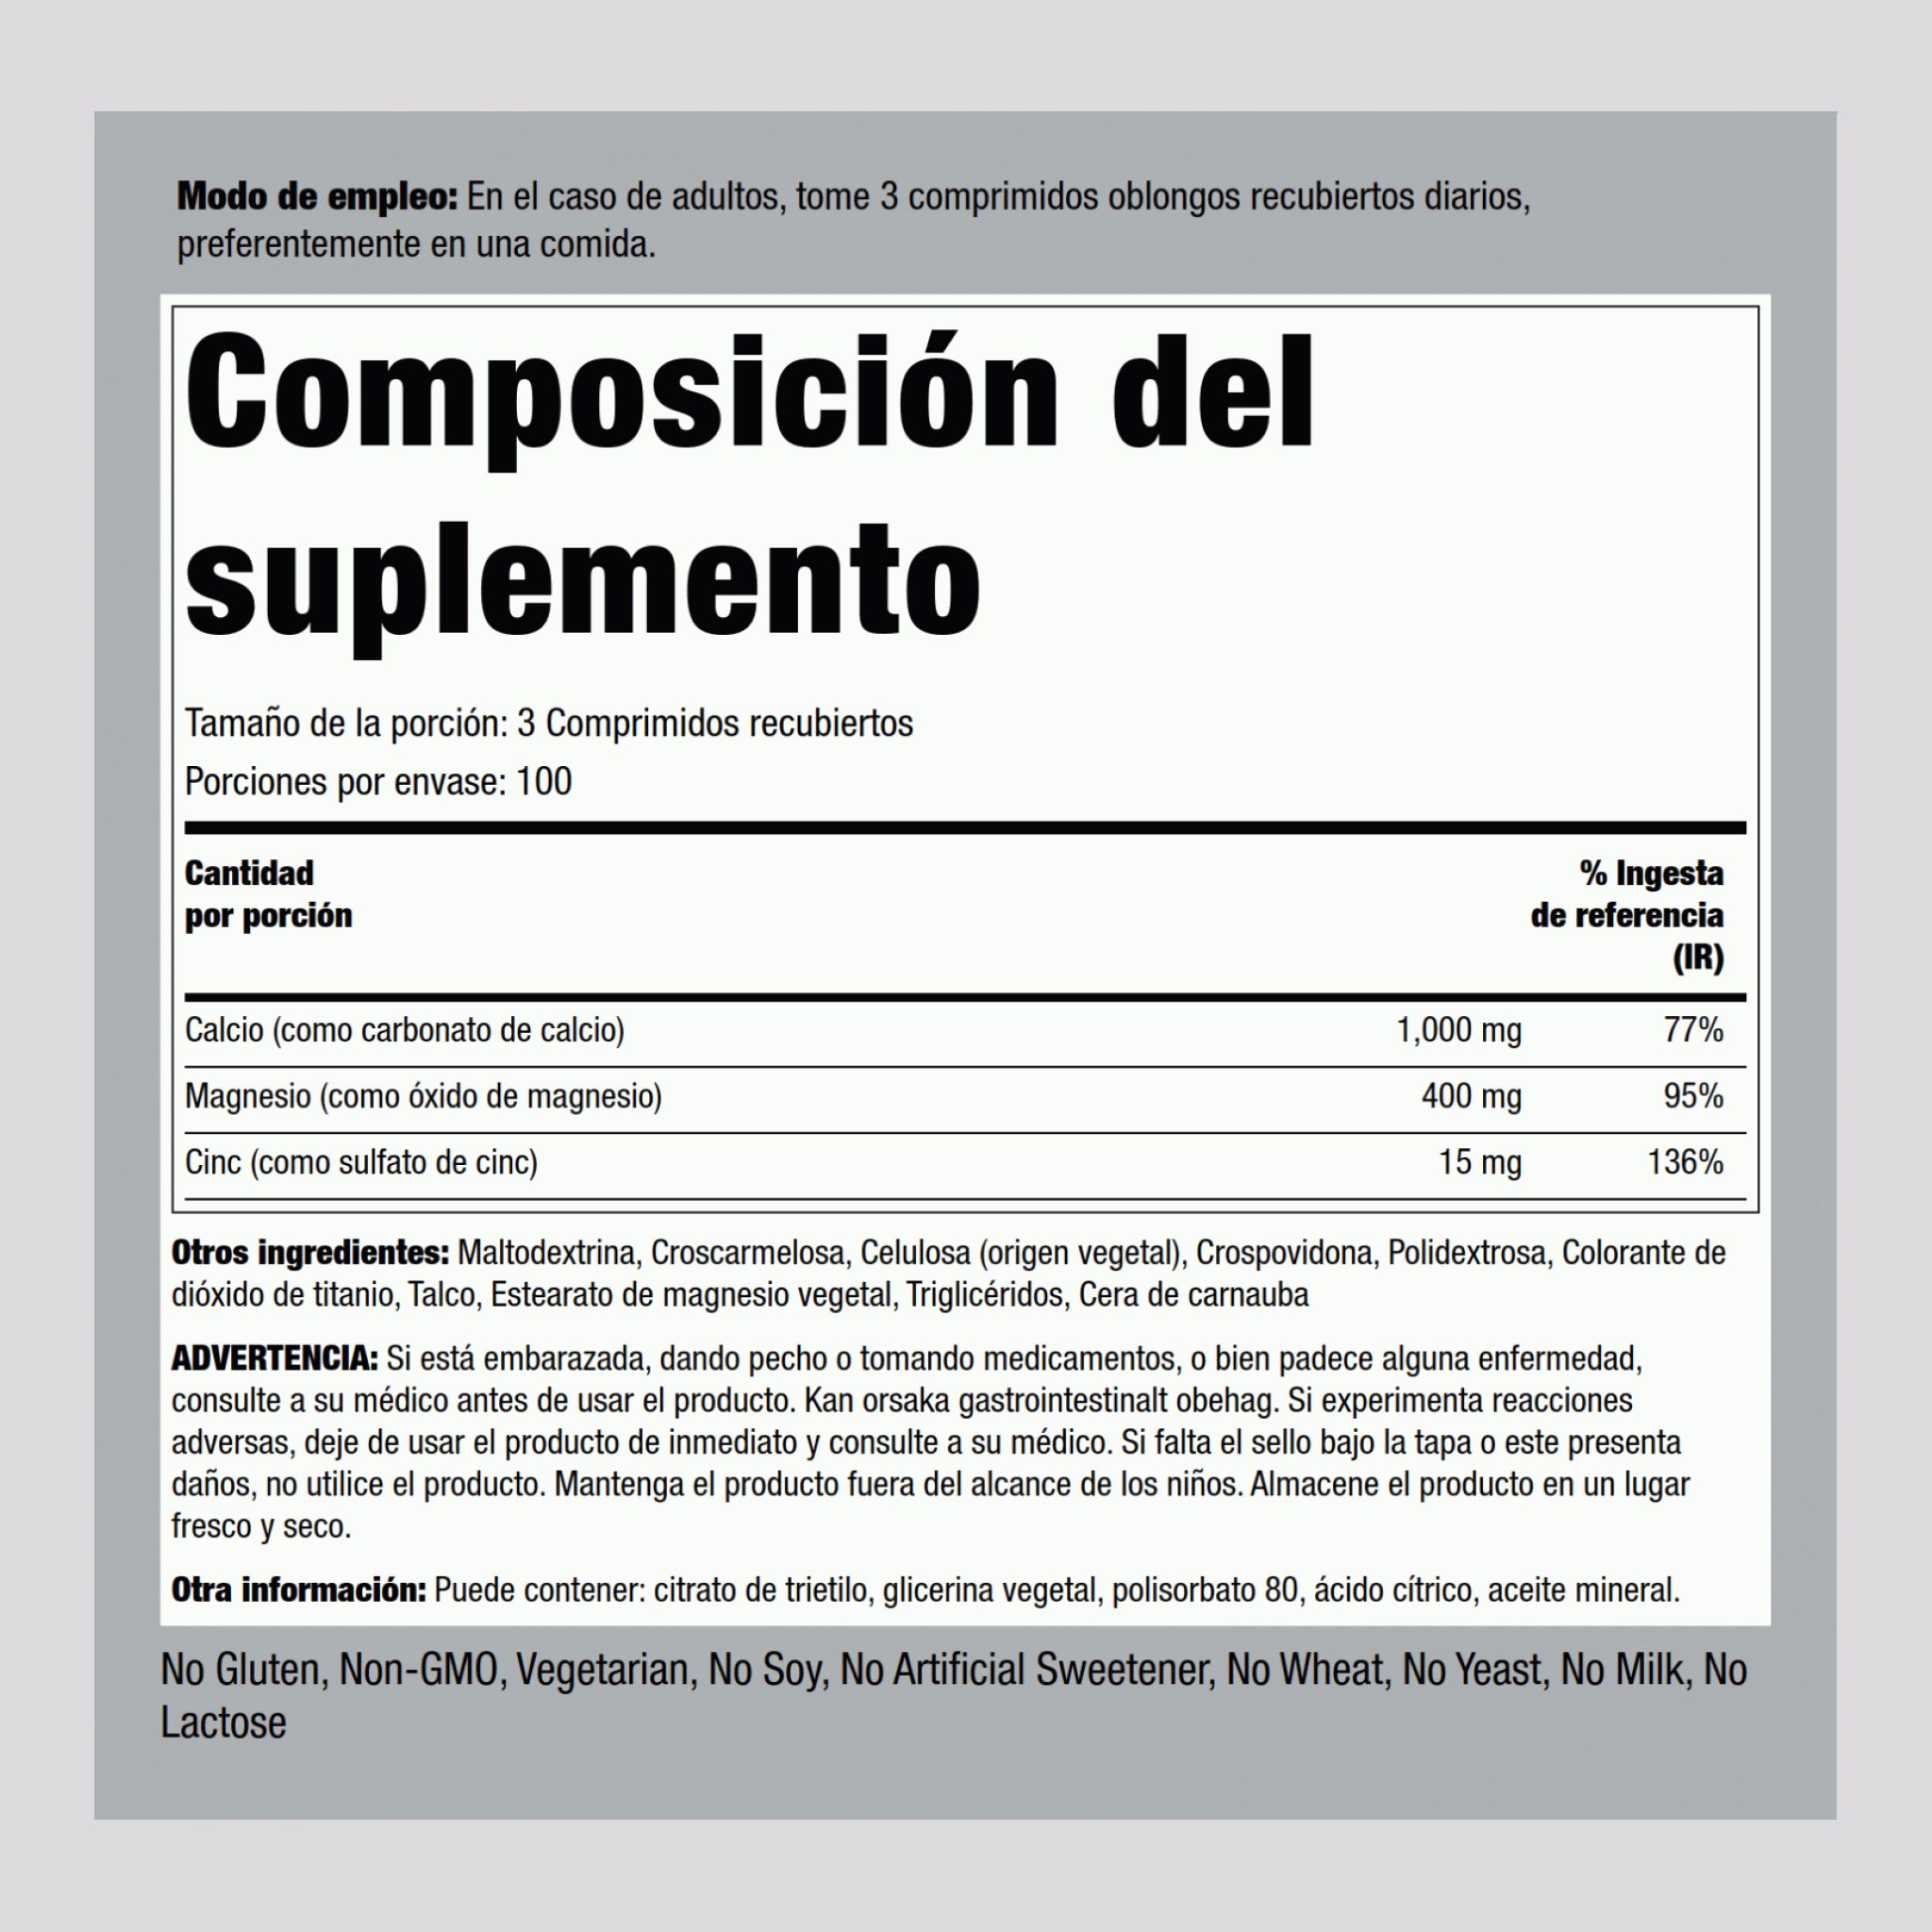 Calcio, magnesio y cinc   (Cal 1000mg/Mag 400mg/Zn 15mg) (per serving) 300 Comprimidos recubiertos       